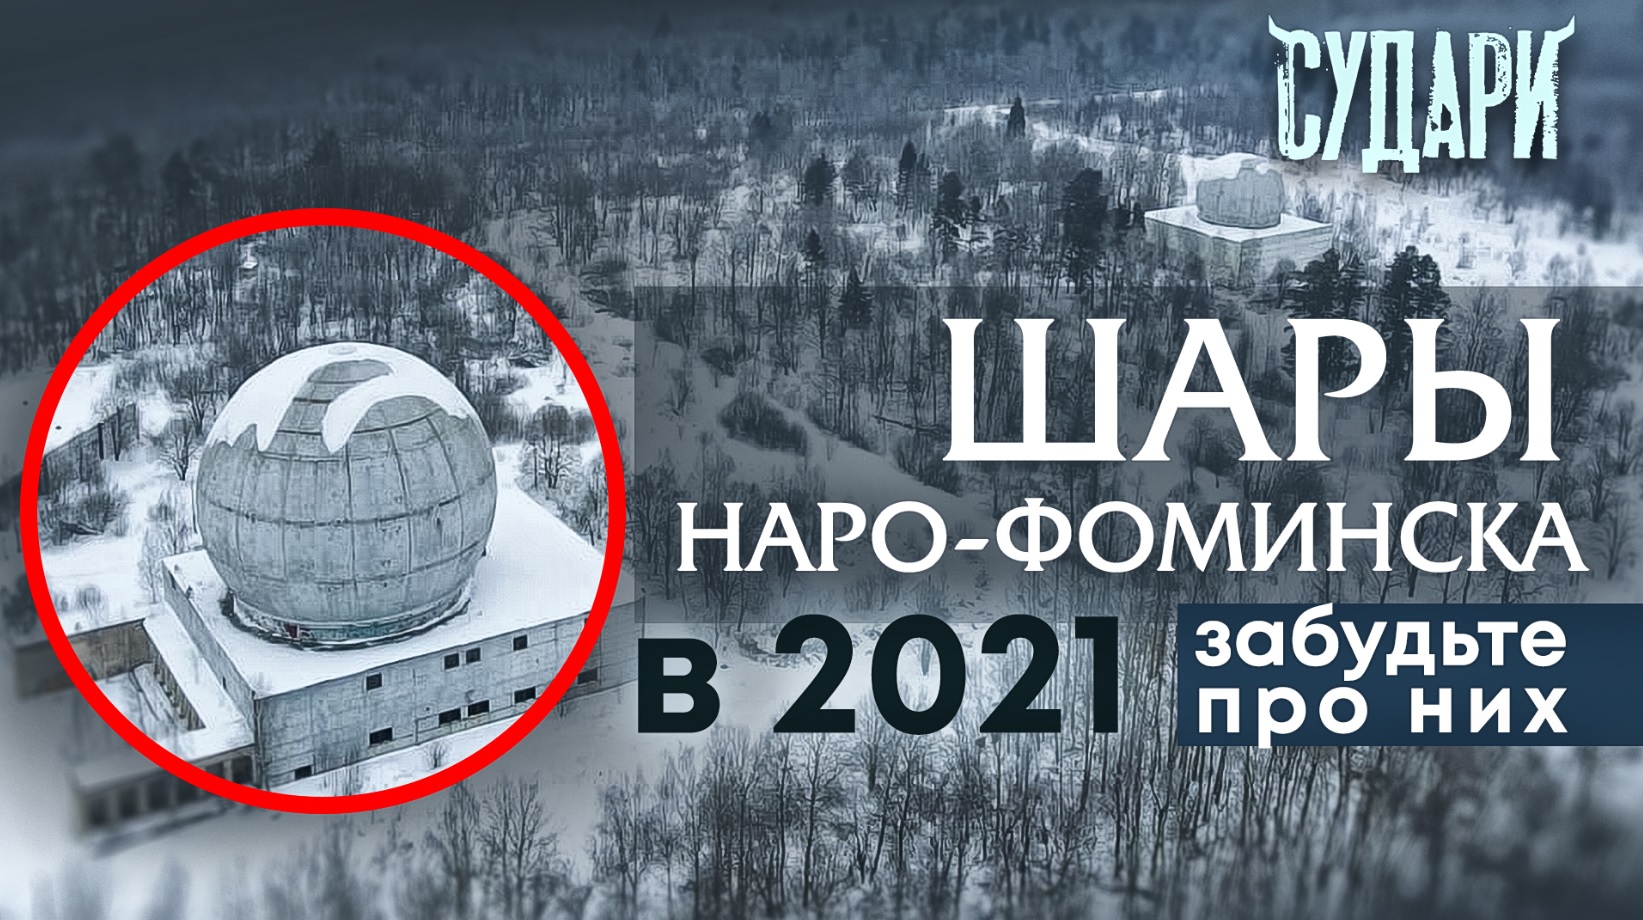 Шары Наро-Фоминска 2021 - что это, ПРО А35 или след НЛО? Тайны подмосковья - почему вам сюда нельзя?